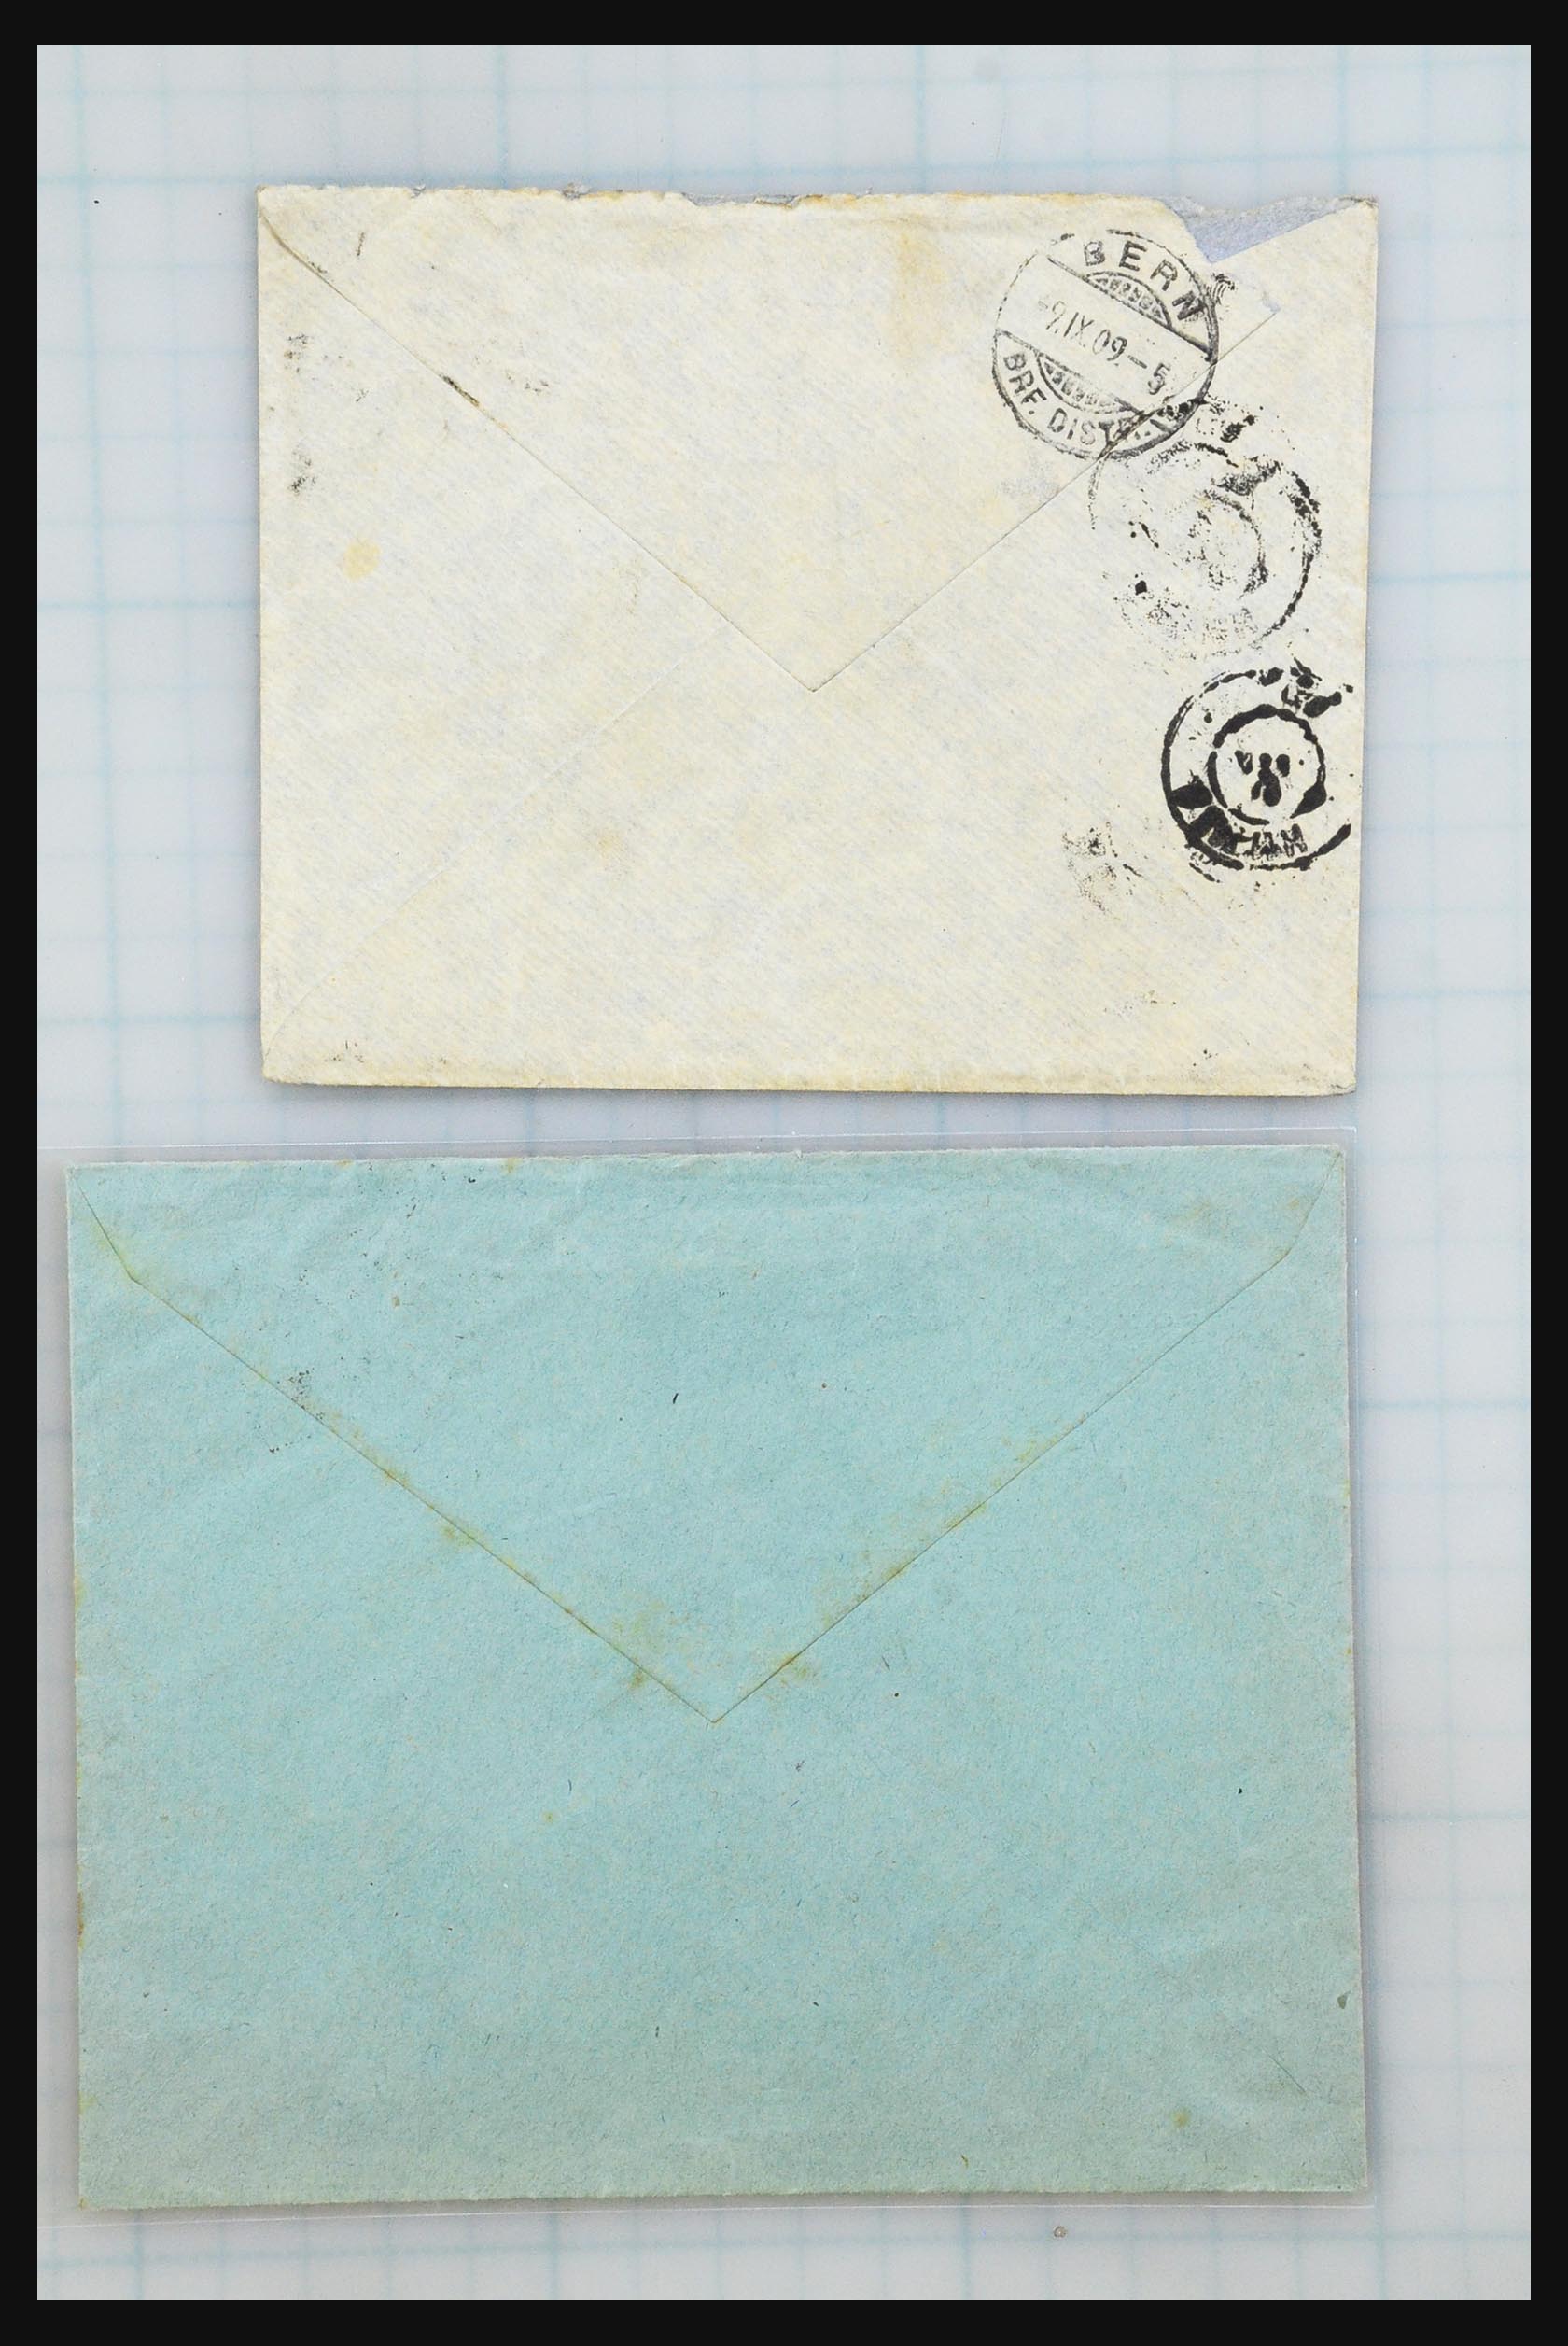 31358 045 - 31358 Portugal/Luxemburg/Griekenland brieven 1880-1960.